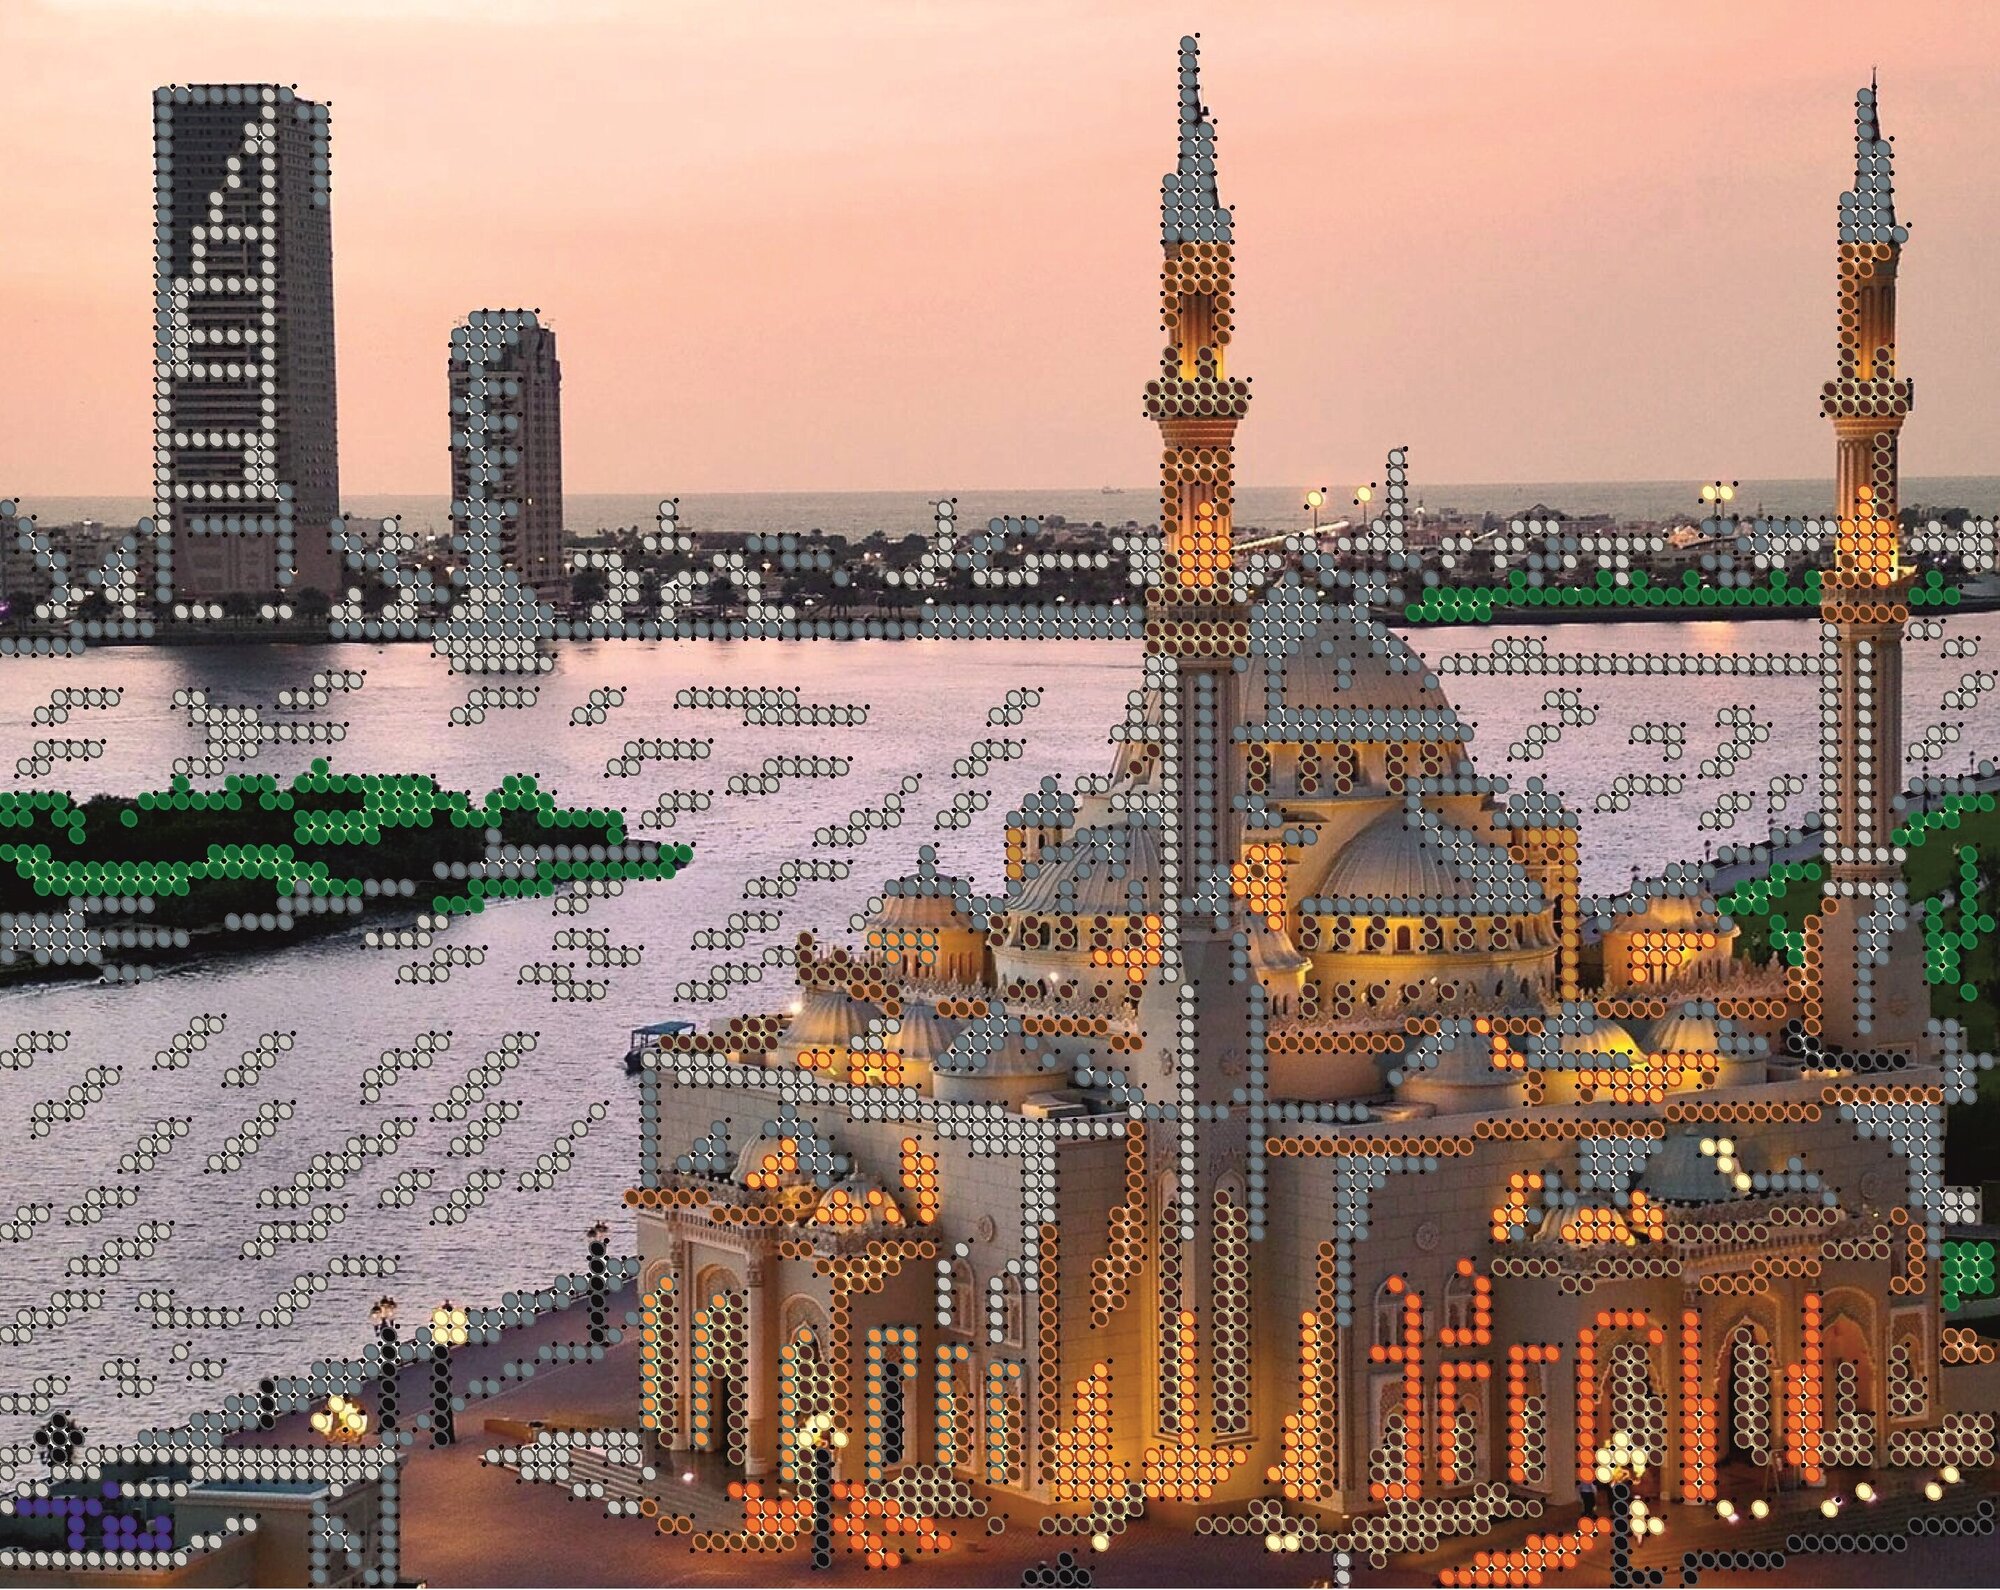 Вышивка бисером картины Мечеть 19*24см